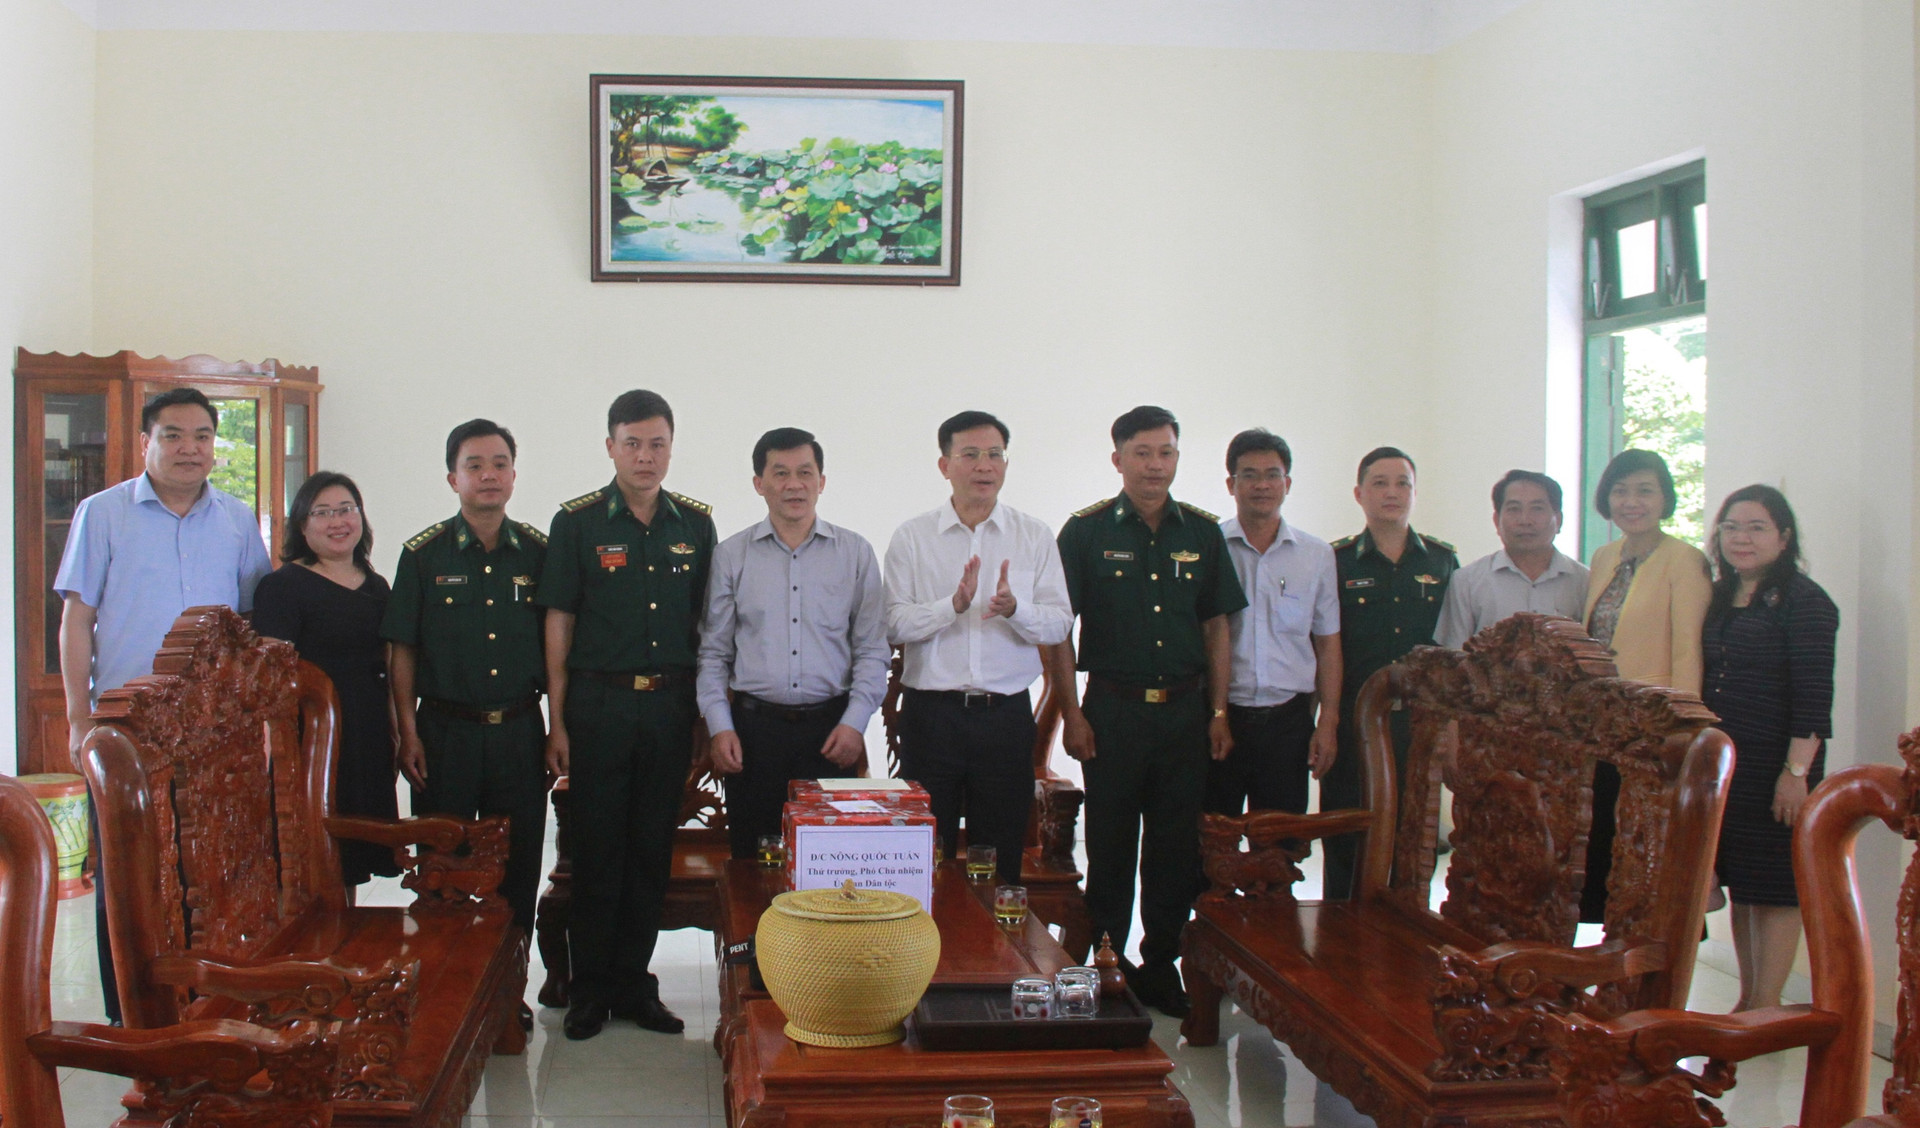 Thứ trưởng Nông Quốc Tuấn và Chủ tịch UBND tỉnh Đắk Nông Hồ Văn Mười trao quà và chụp ảnh lưu niệm tại Đồn Biên phòng cửa khẩu Bu Prăng.